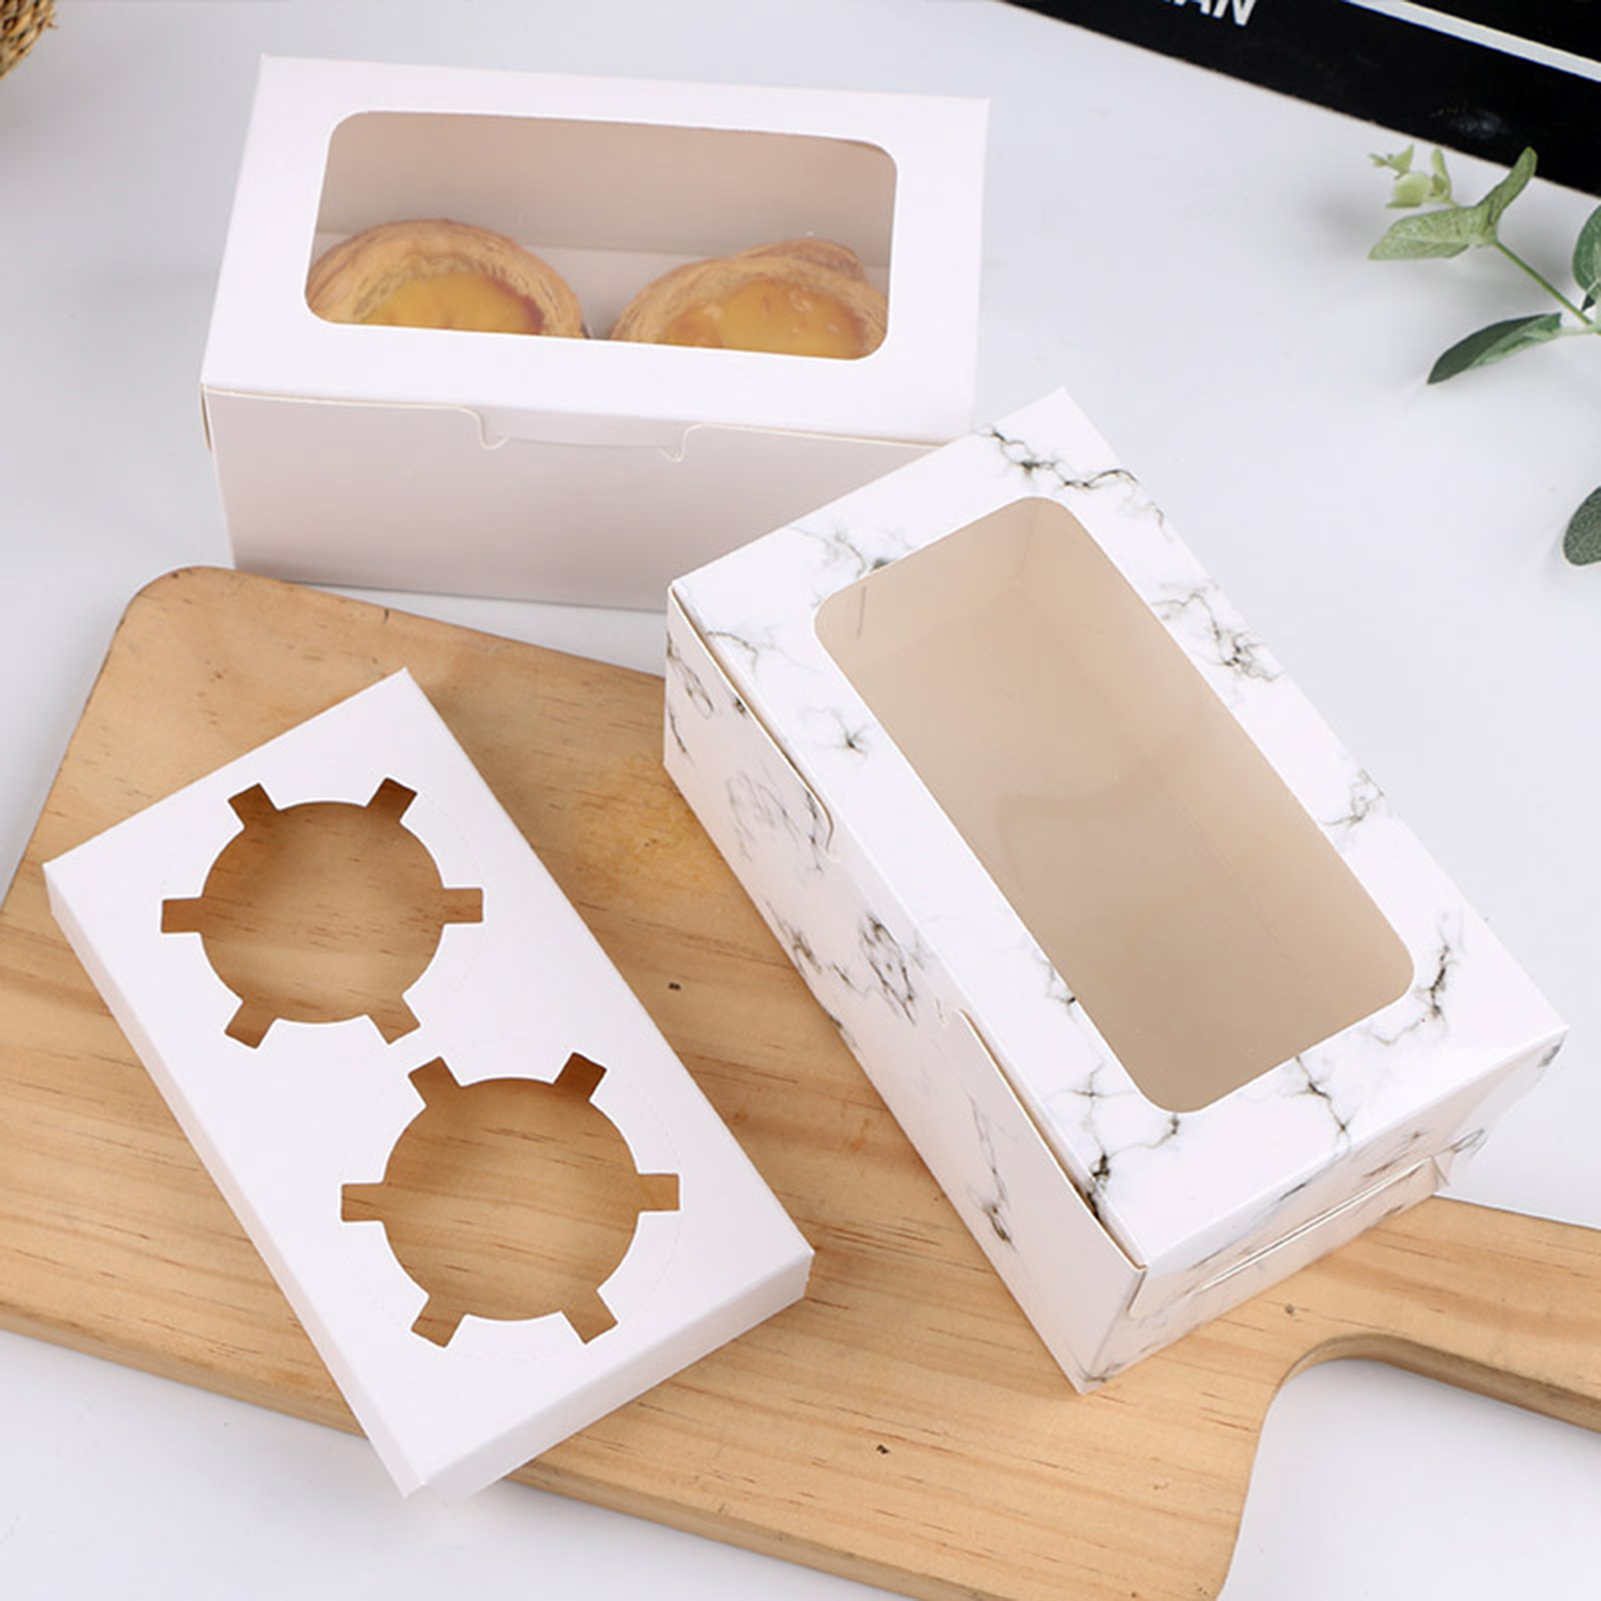 cupcakes biscoitos de muffin kraft conveniente prático elegante e elegante caixa de embalagem contêiner com papelão